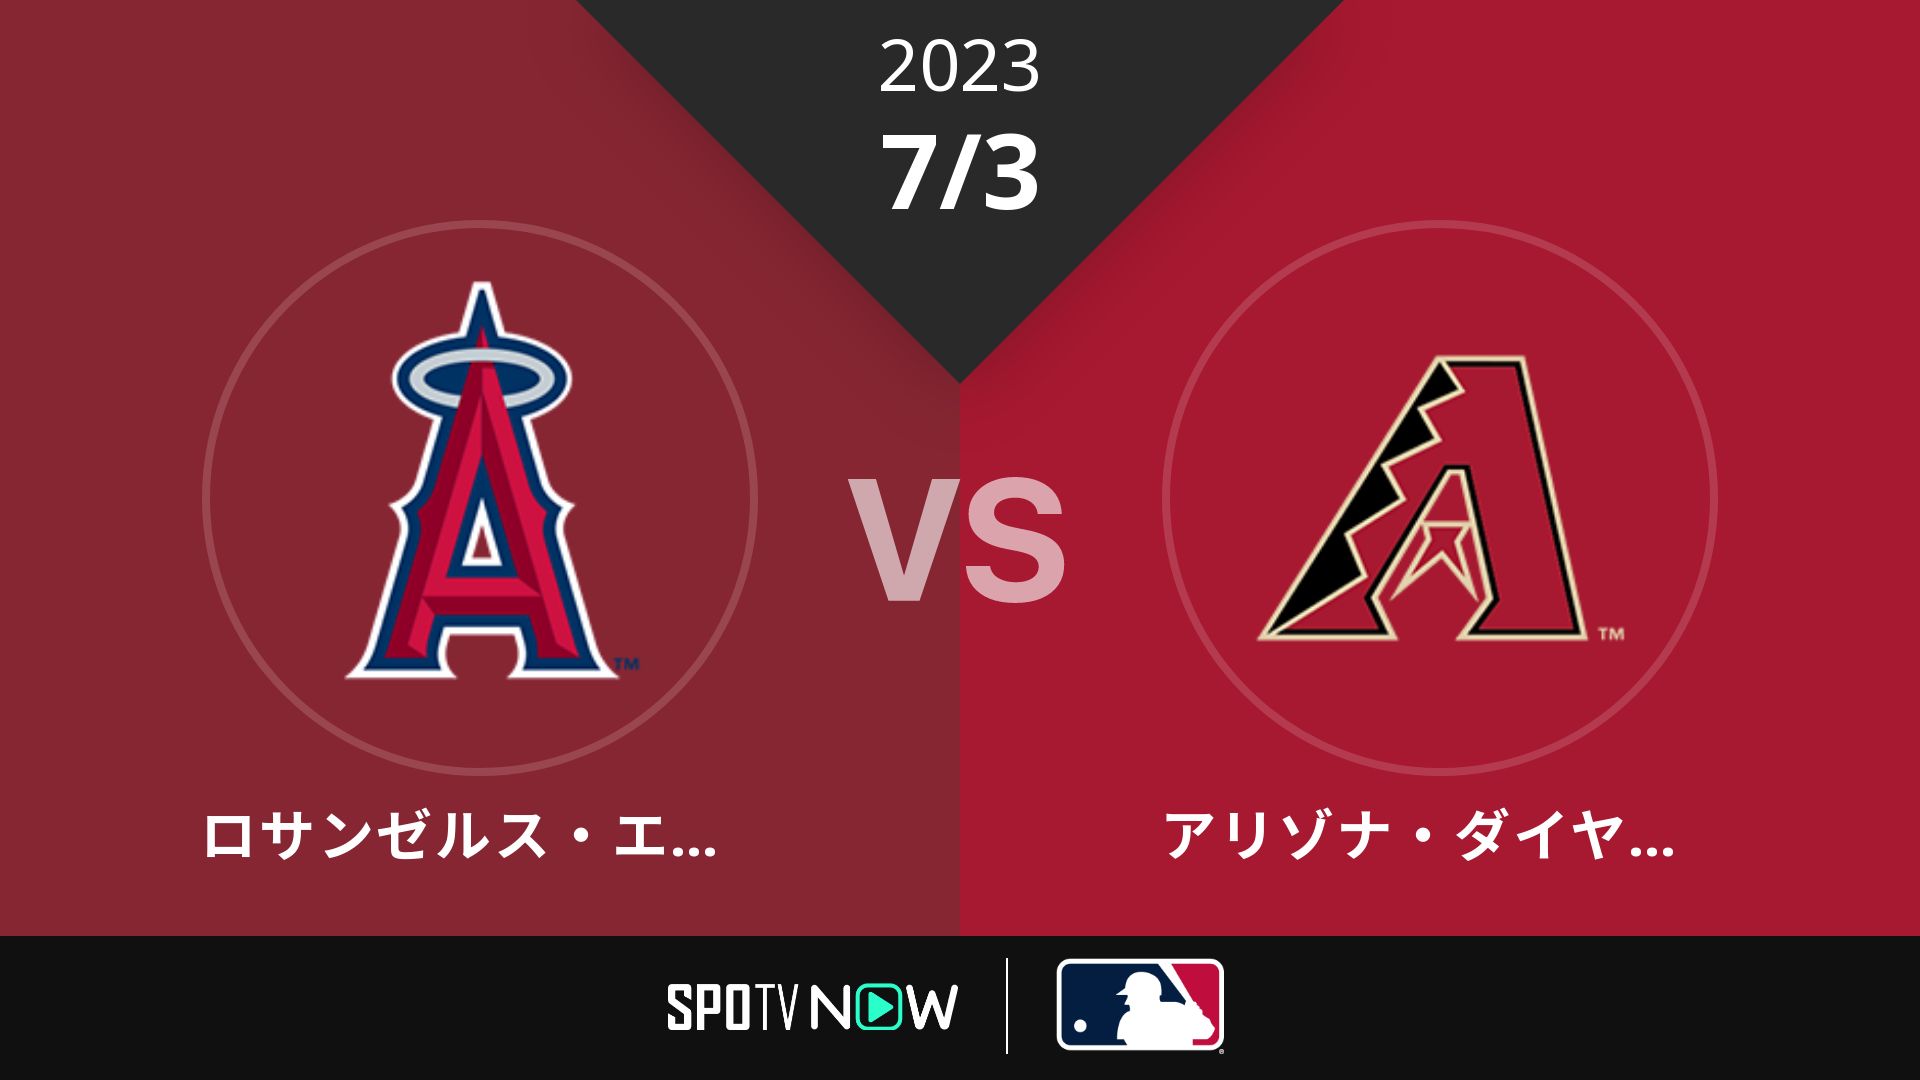 2023/7/3 エンゼルス vs Dバックス [MLB]